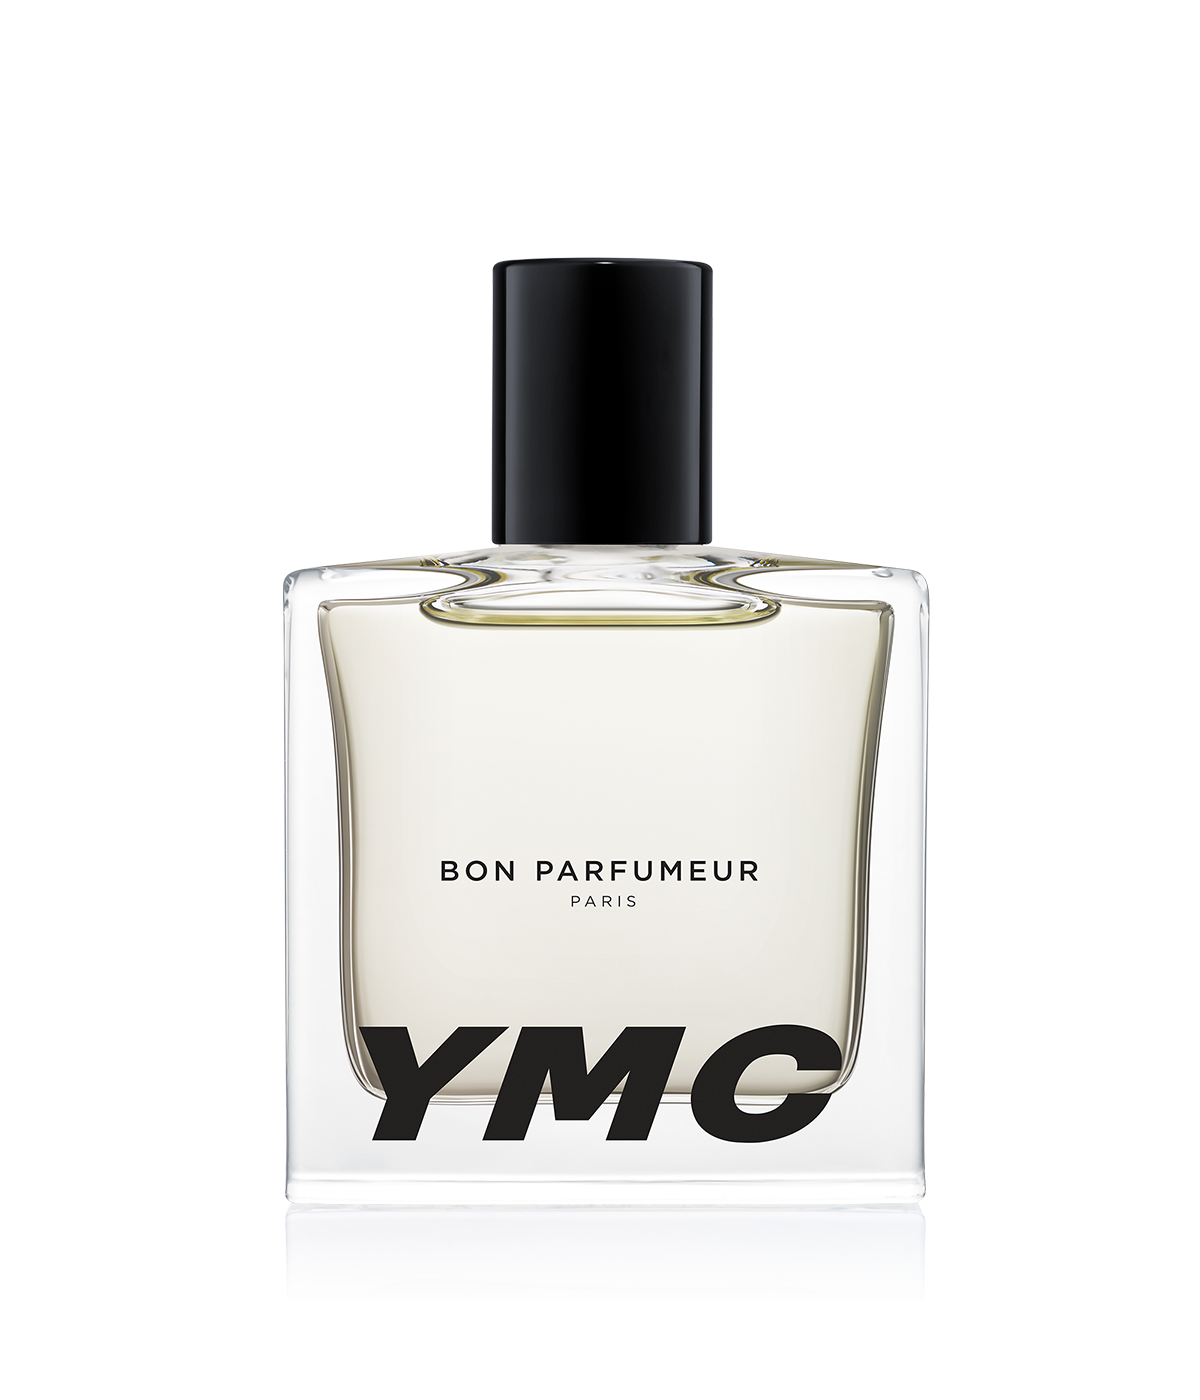 A bottle of Bon Parfumeur 105 YMC Eau de Parfum.